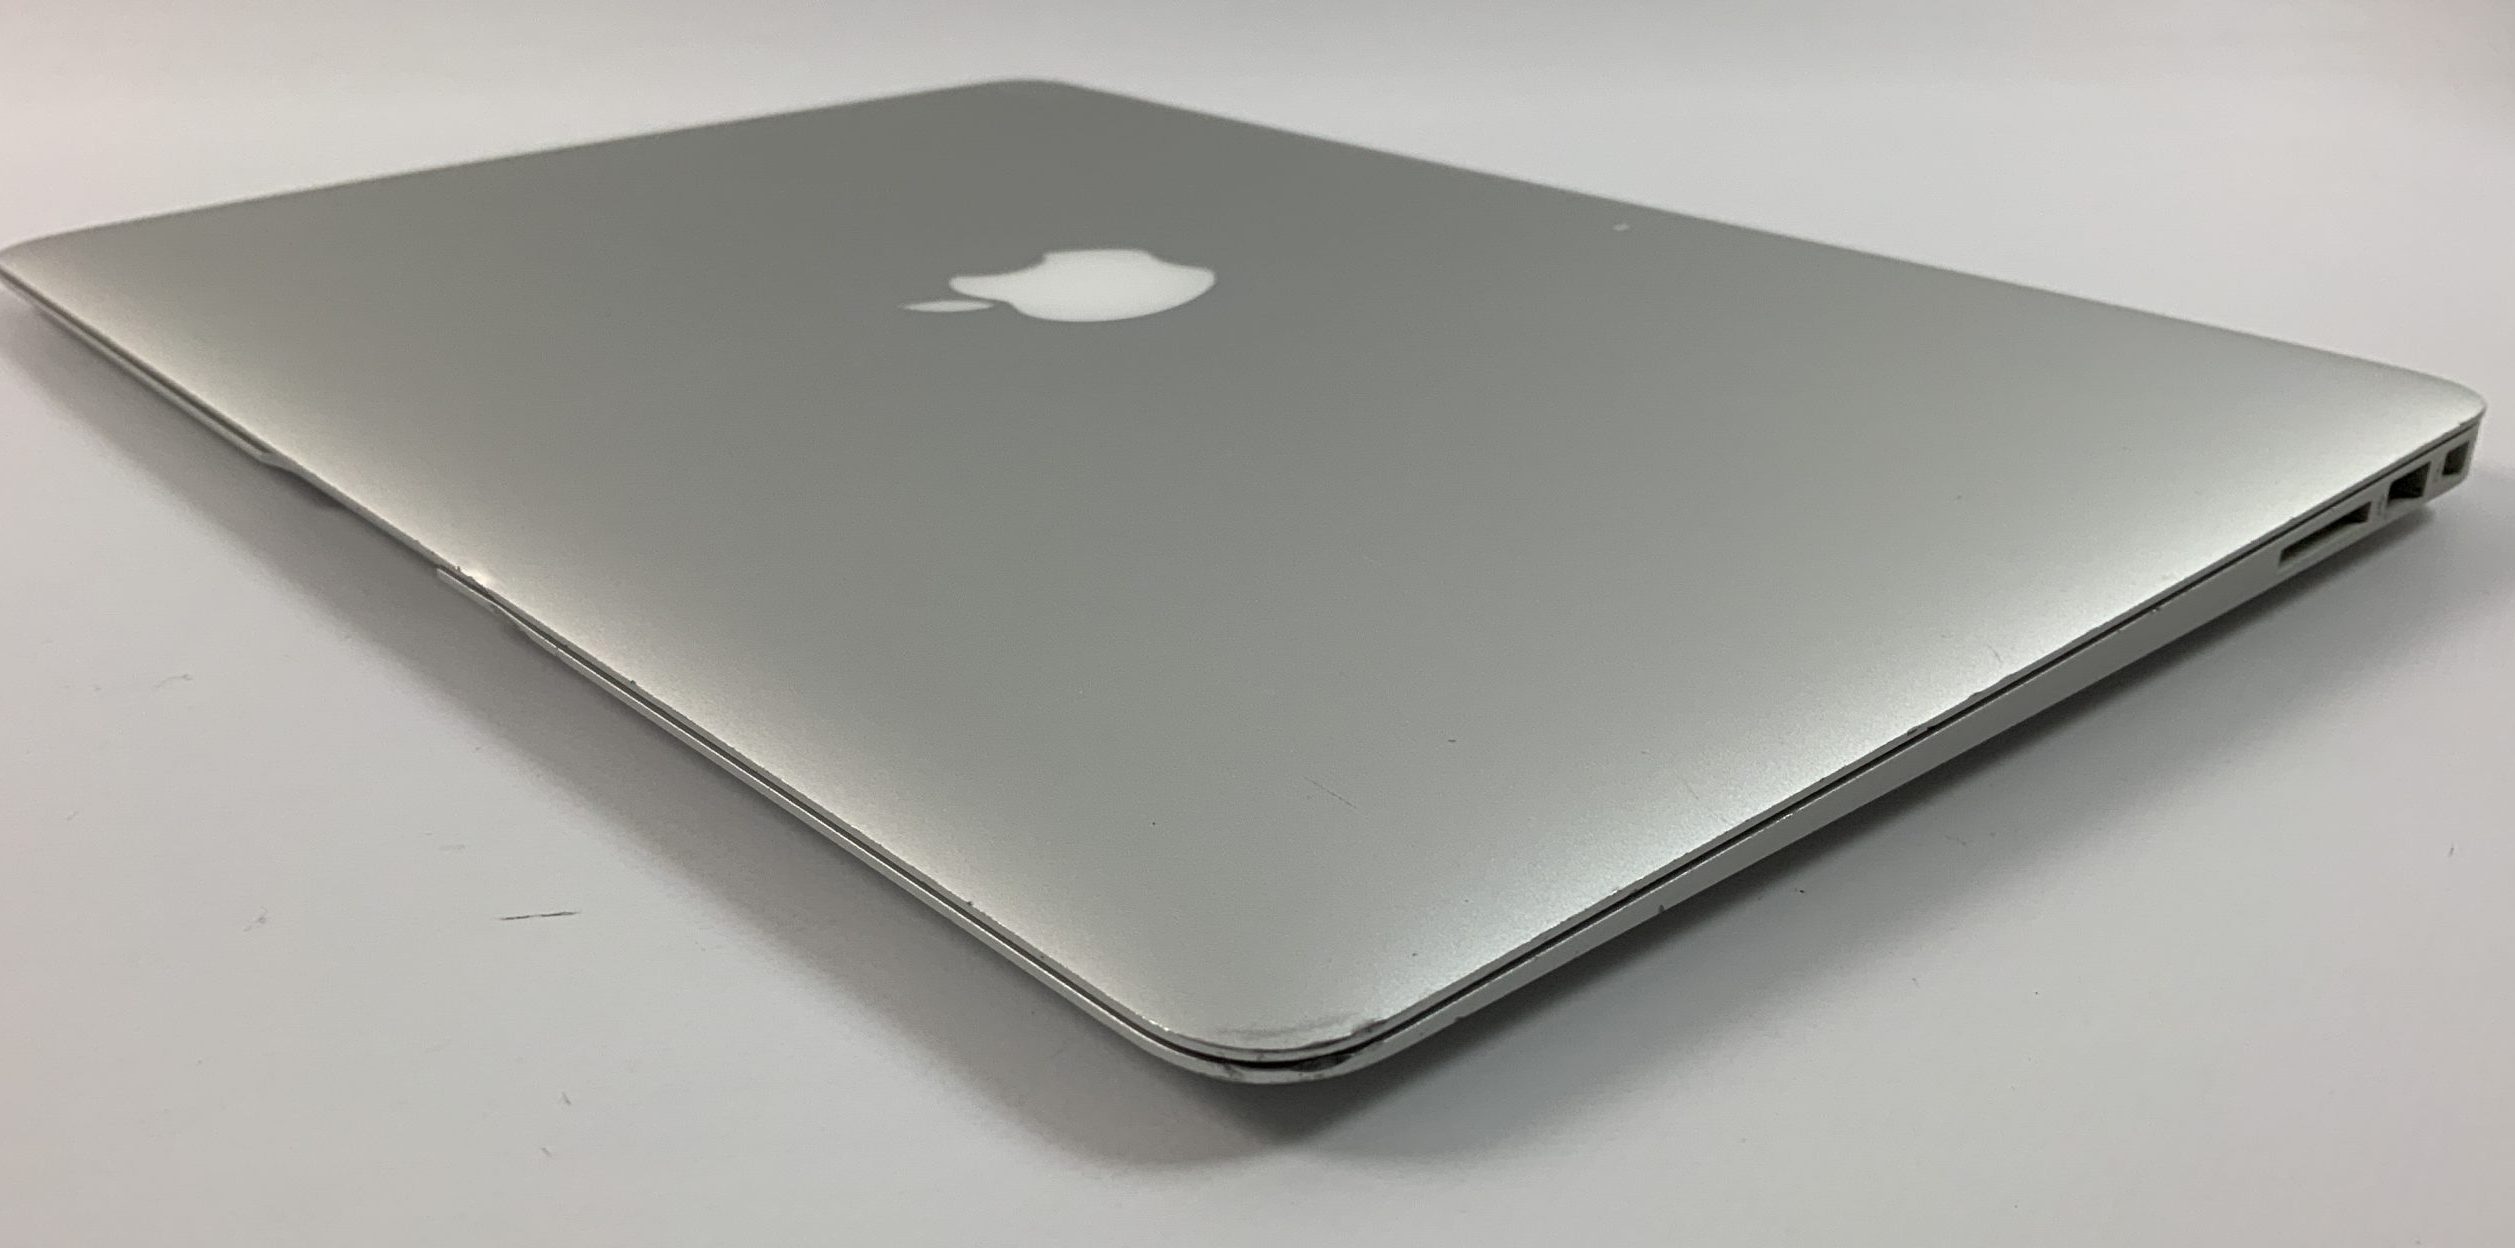 MacBook Air 13" Mid 2017 (Intel Core i5 1.8 GHz 8 GB RAM 256 GB SSD), Intel Core i5 1.8 GHz, 8 GB RAM, 256 GB SSD, immagine 5